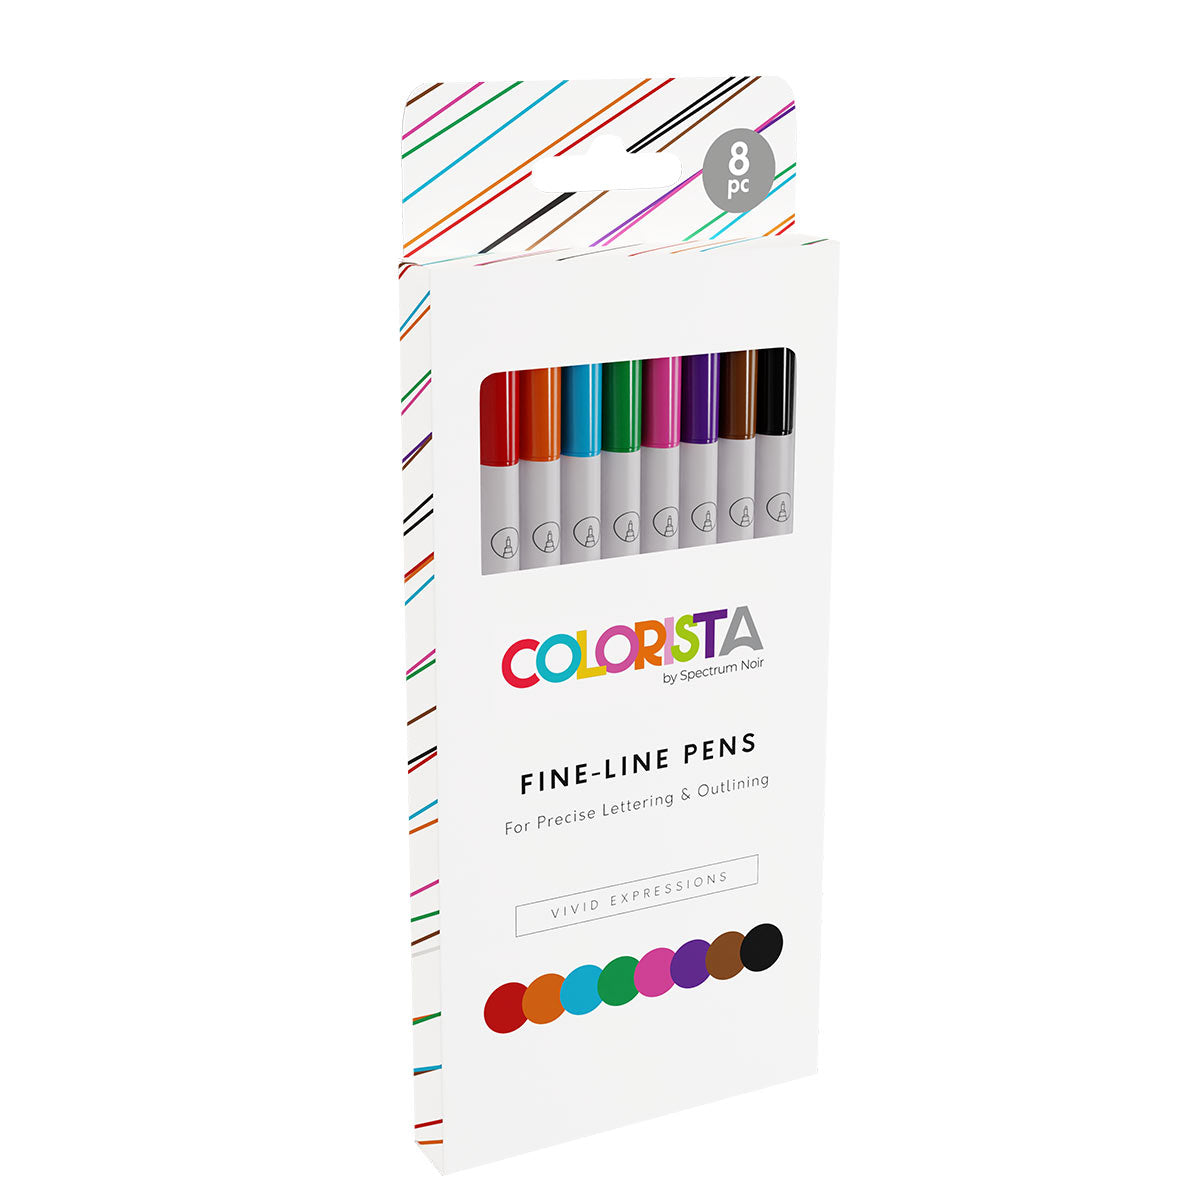 Spectrum noir colorista - fijne voering pennen (8 set) levendige uitdrukkingen